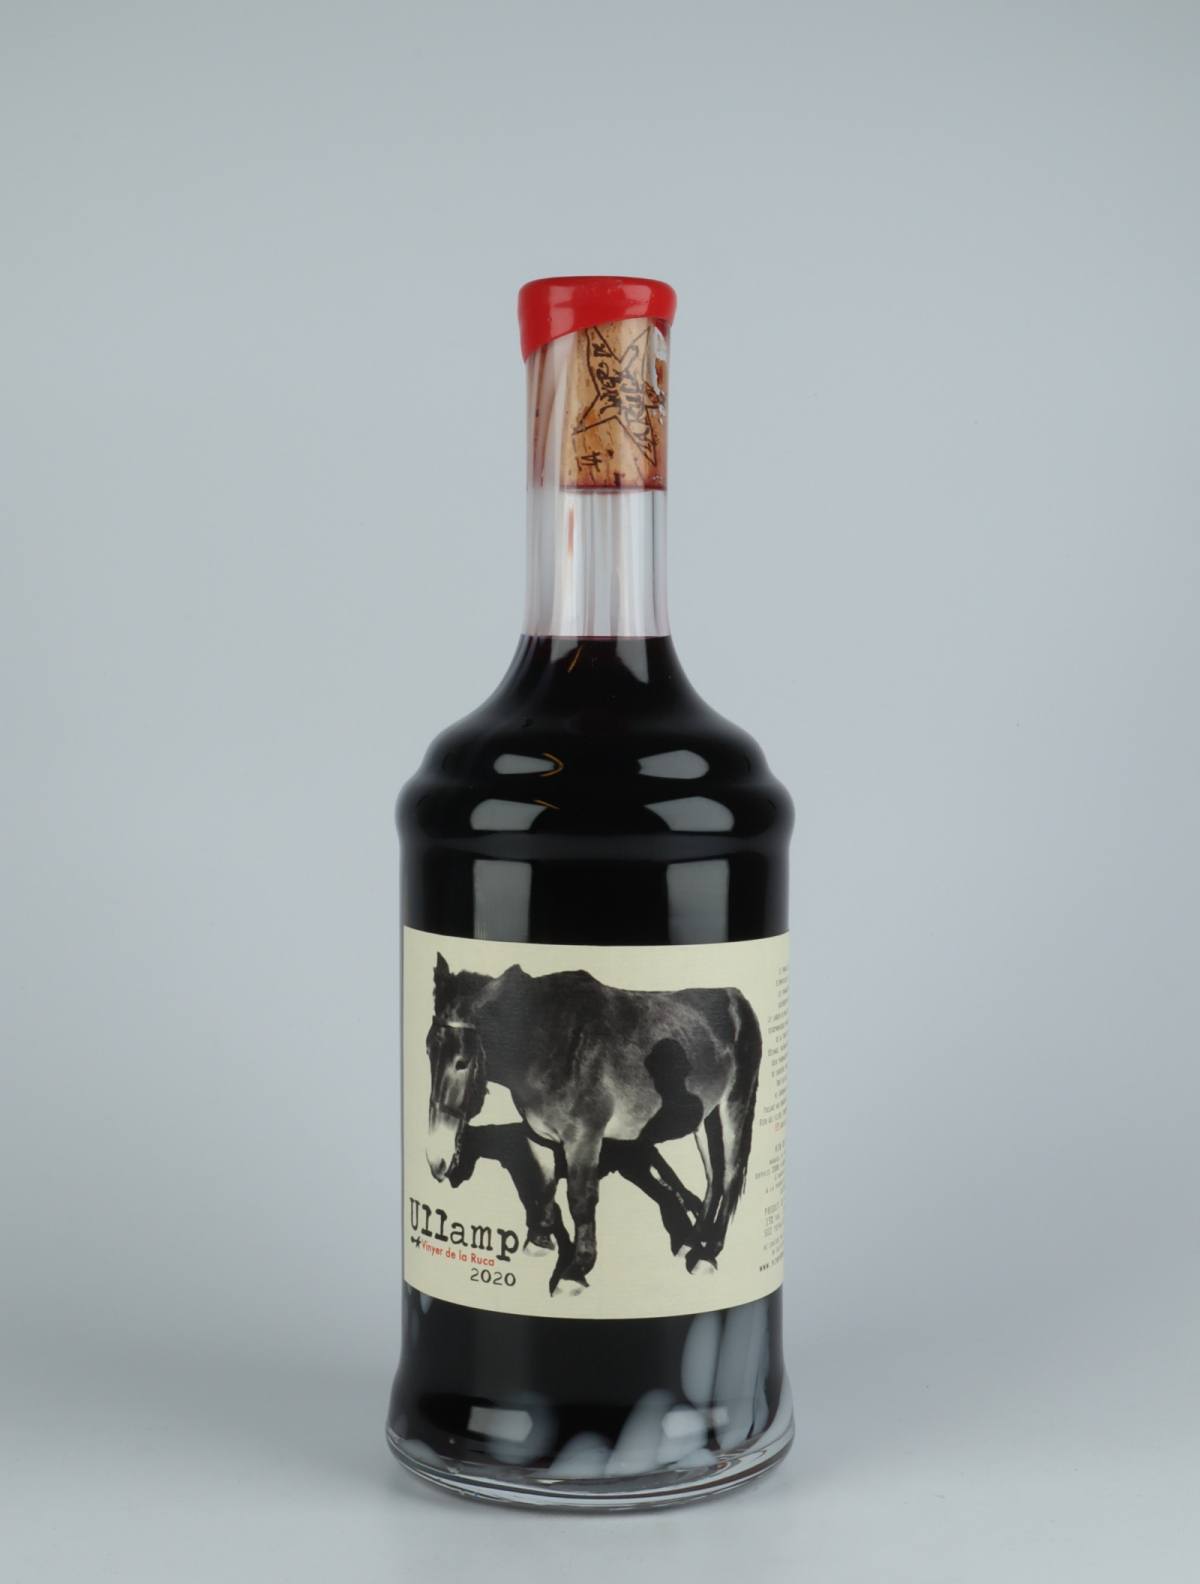 En flaske 2020 Ullamp Rødvin fra Vinyer de la Ruca, Rousillon i Frankrig